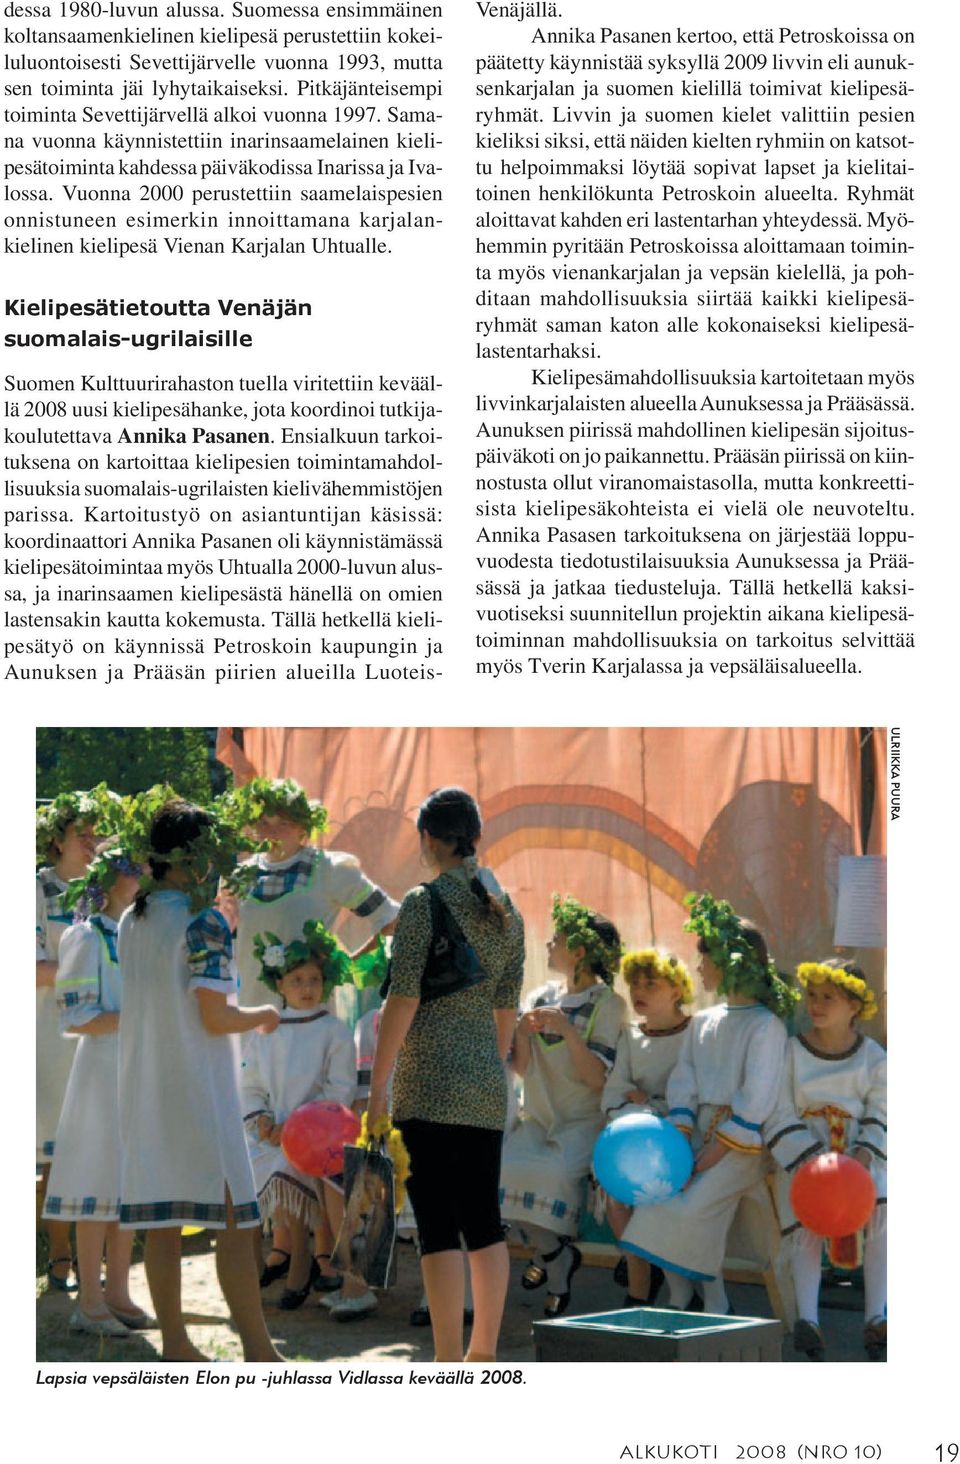 Vuonna 2000 perustettiin saamelaispesien onnistuneen esimerkin innoittamana karjalankielinen kielipesä Vienan Karjalan Uhtualle.